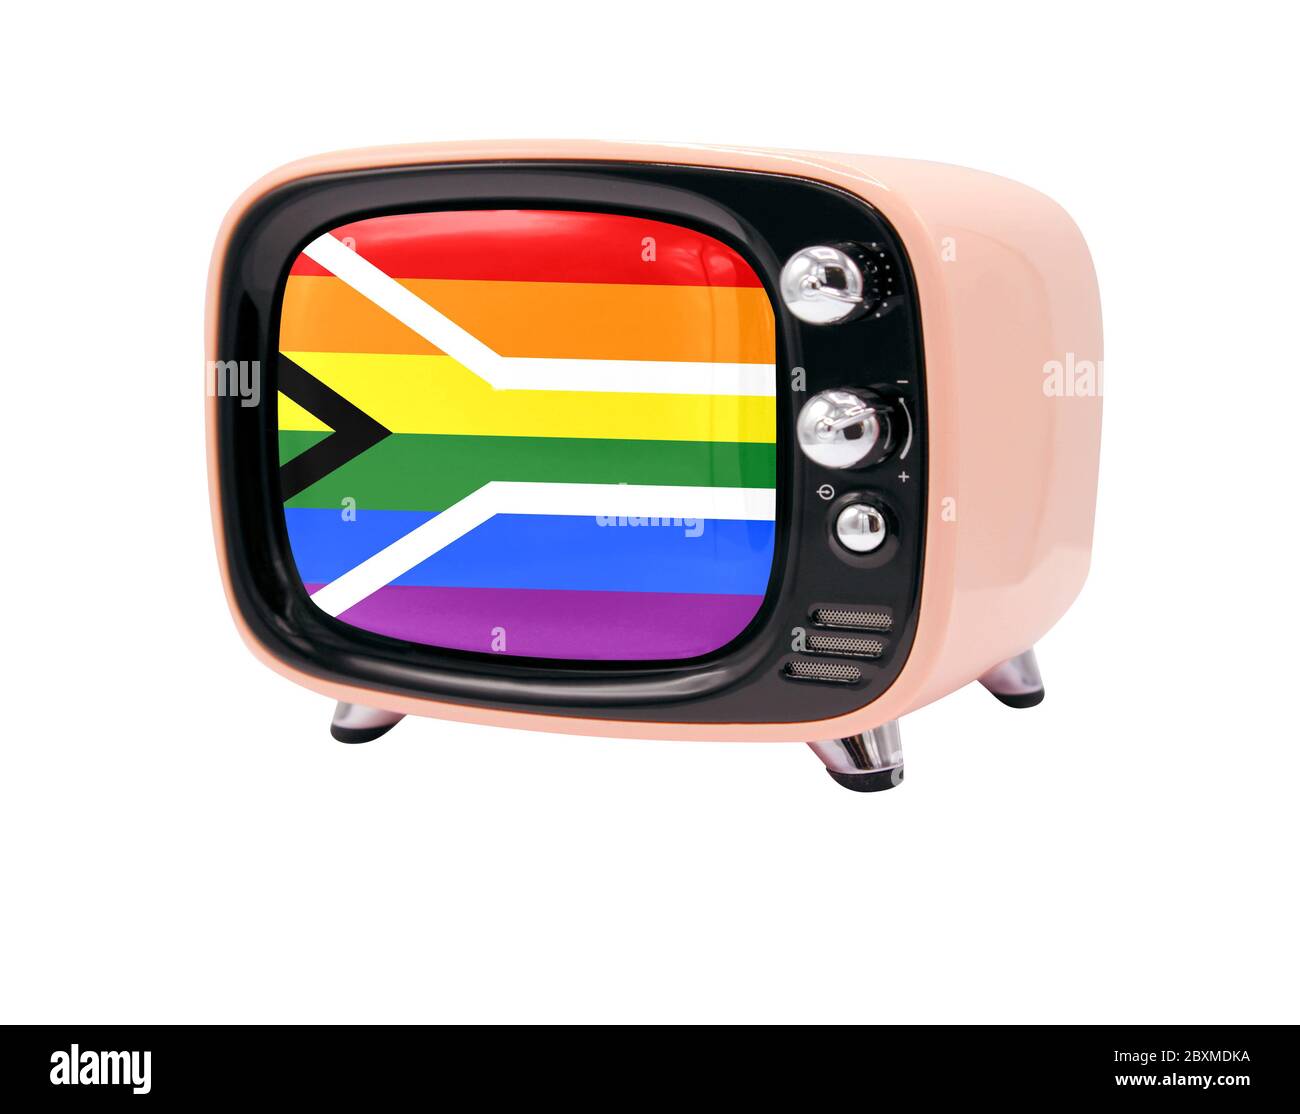 Le rétro vieux téléviseur est isolé sur fond blanc avec le drapeau de la fierté gay de l'Afrique du Sud Banque D'Images